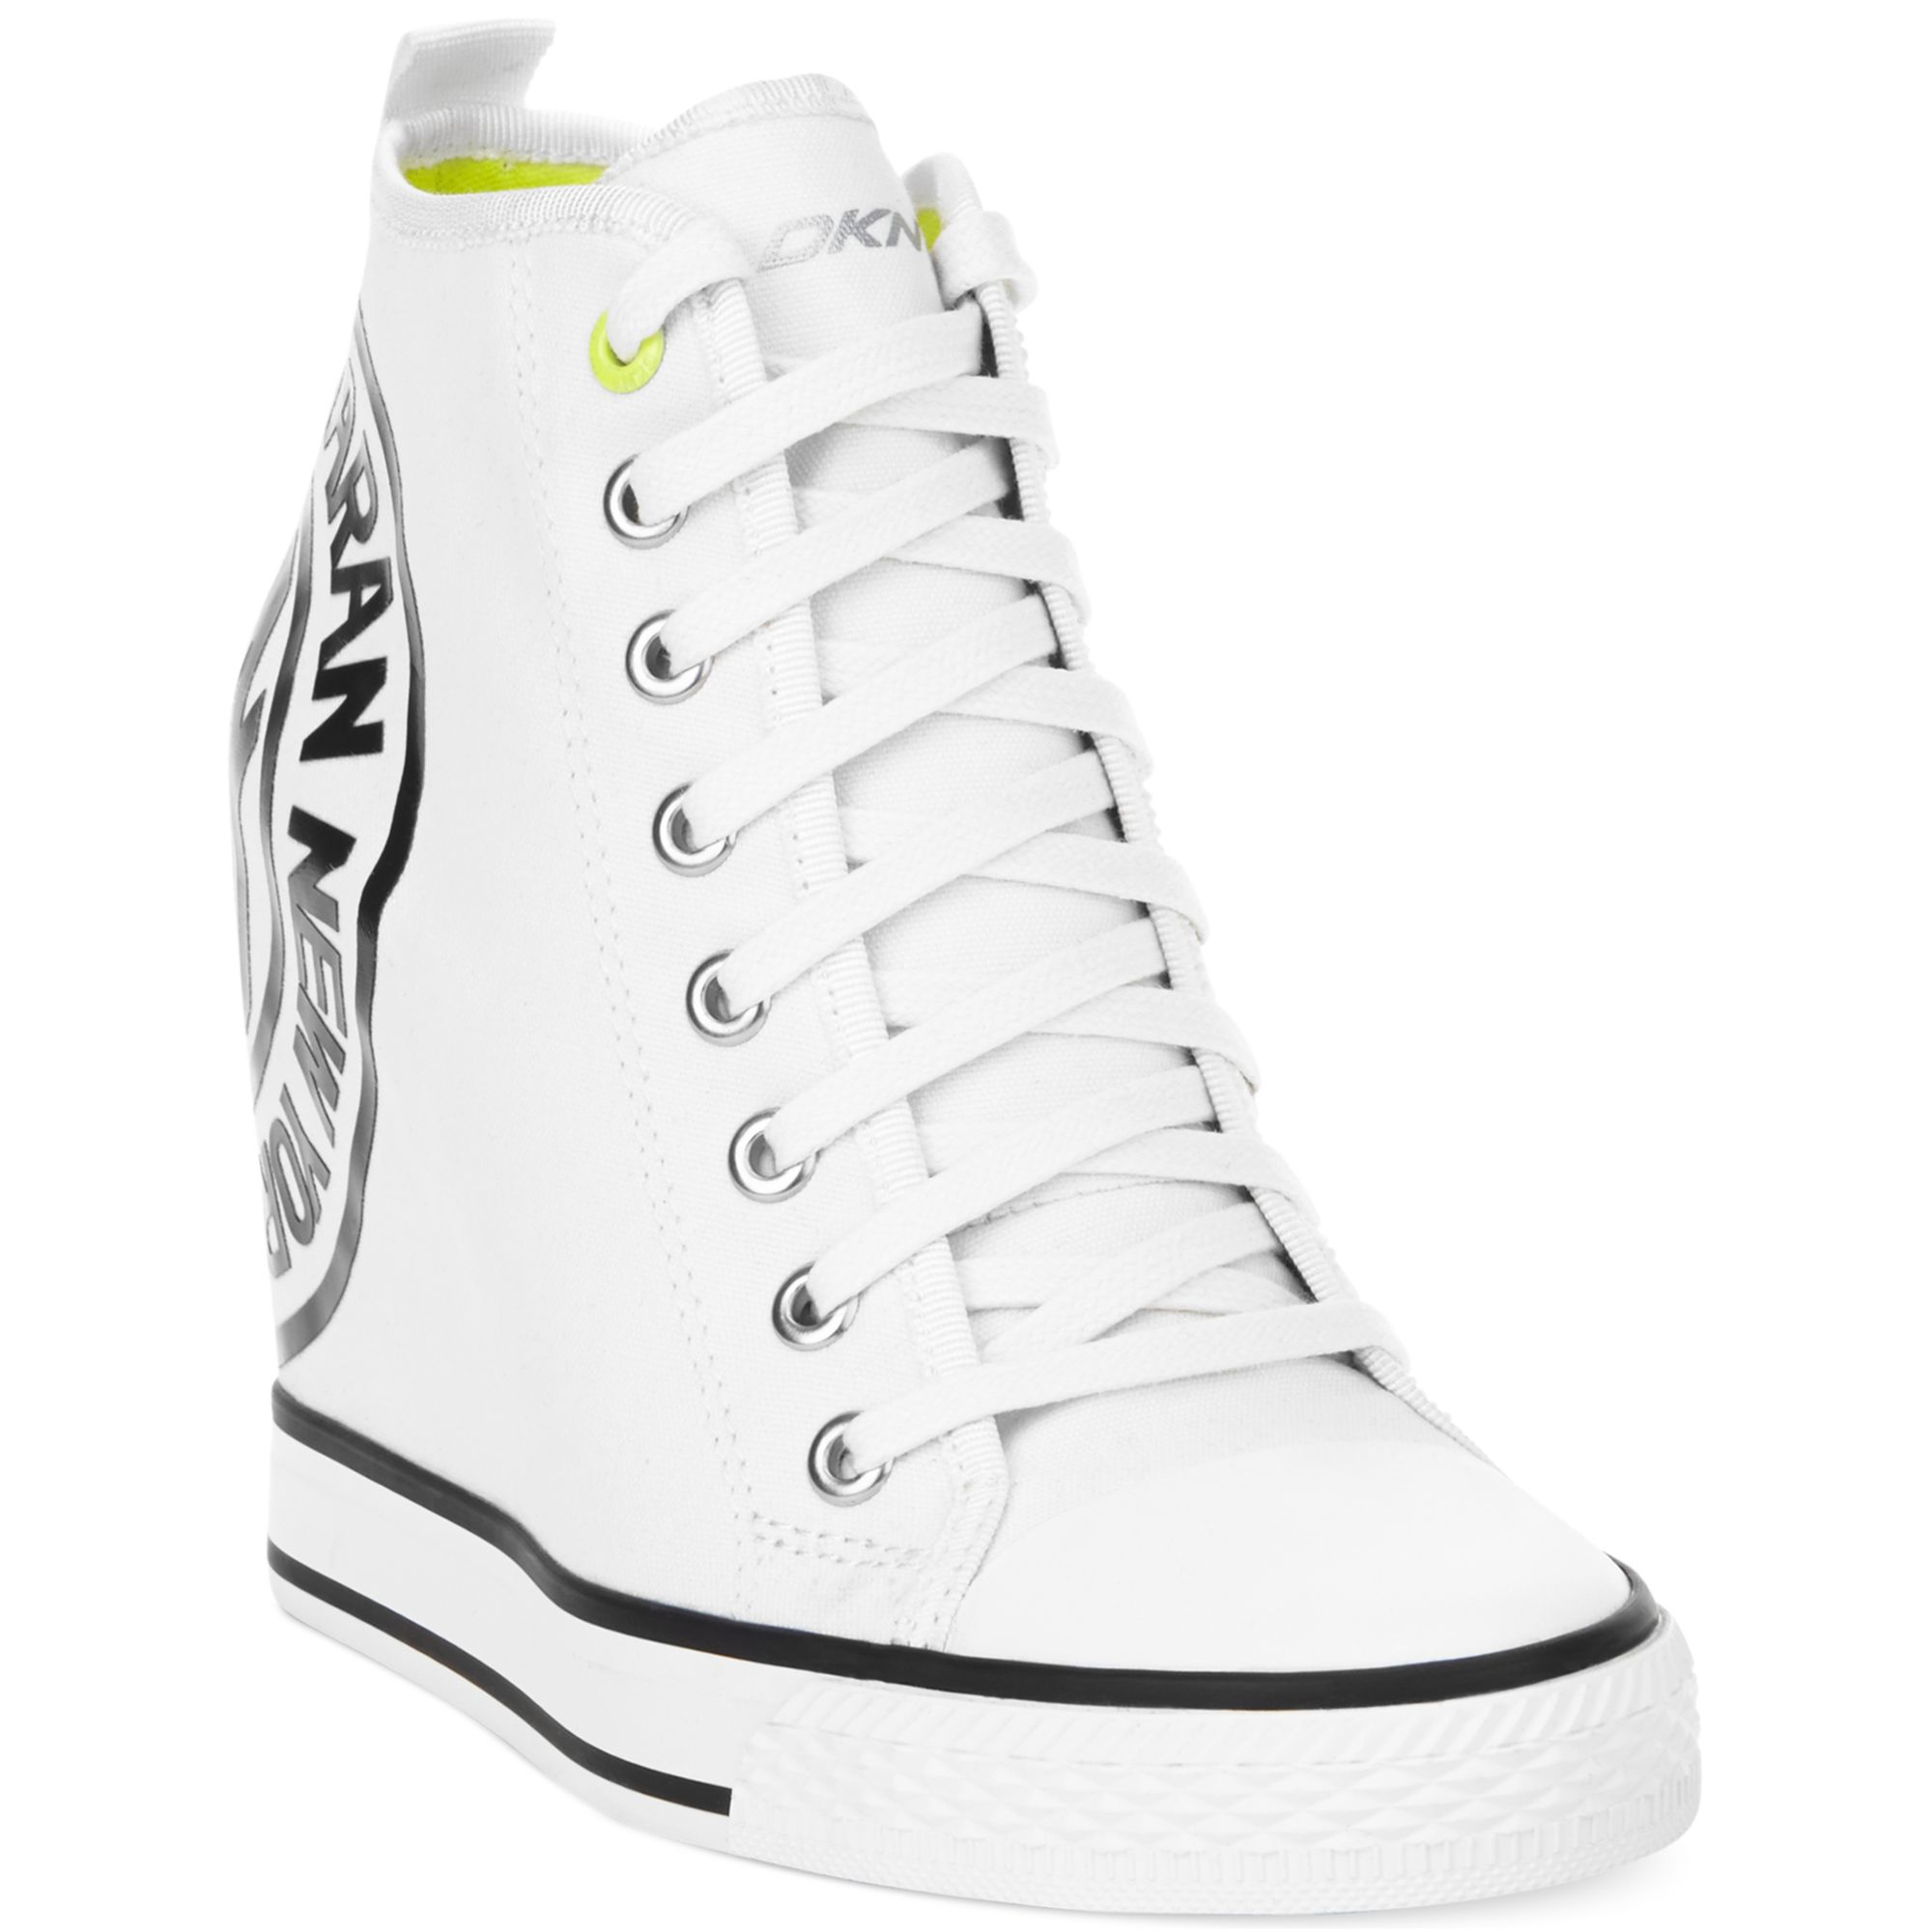 DKNY Grommet Wedge Sneakers White | Lyst